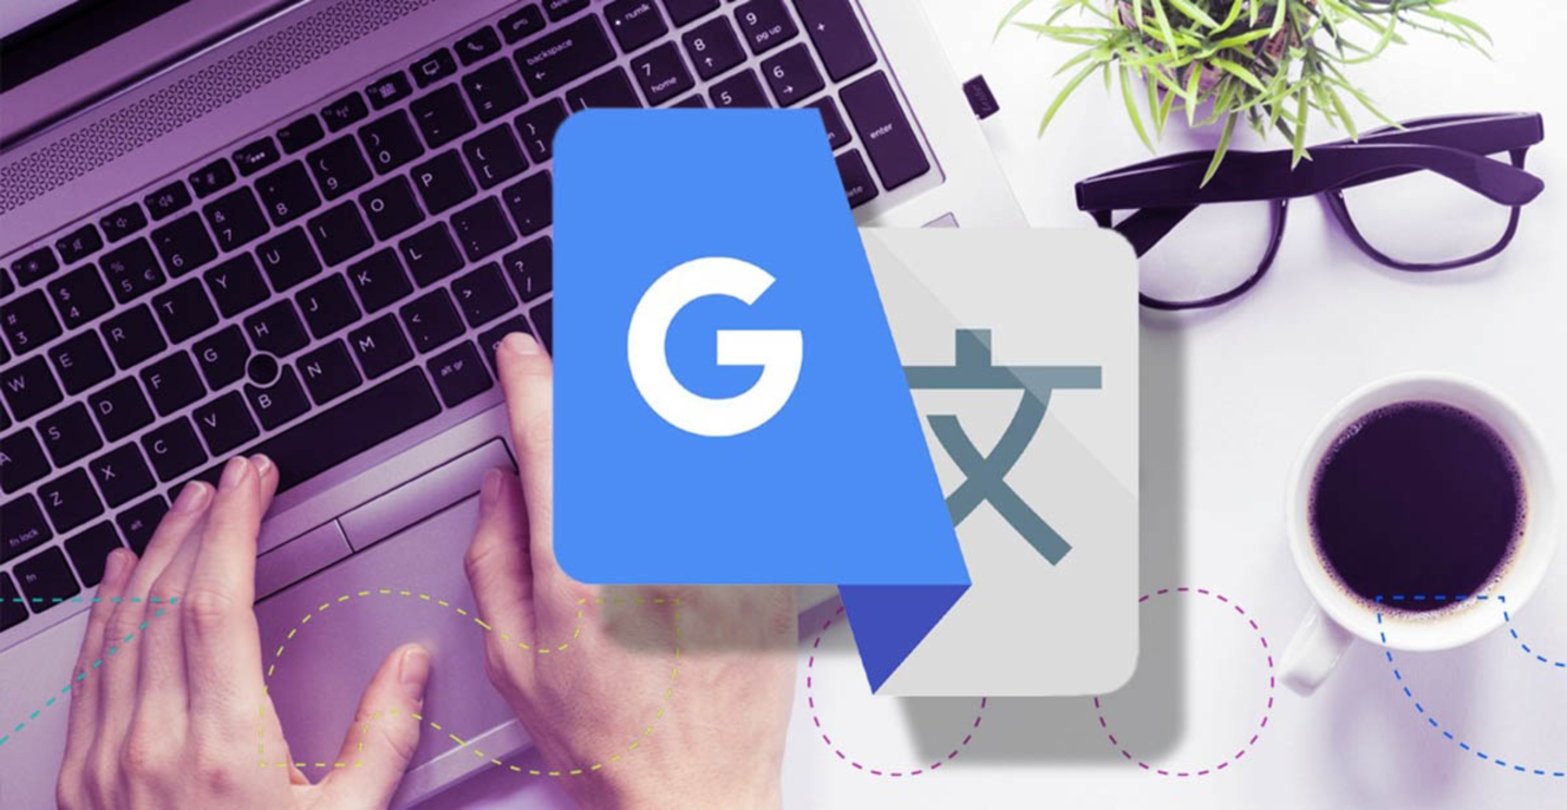 Traductor de Google vs DeepL diferencias y cuál es mejor